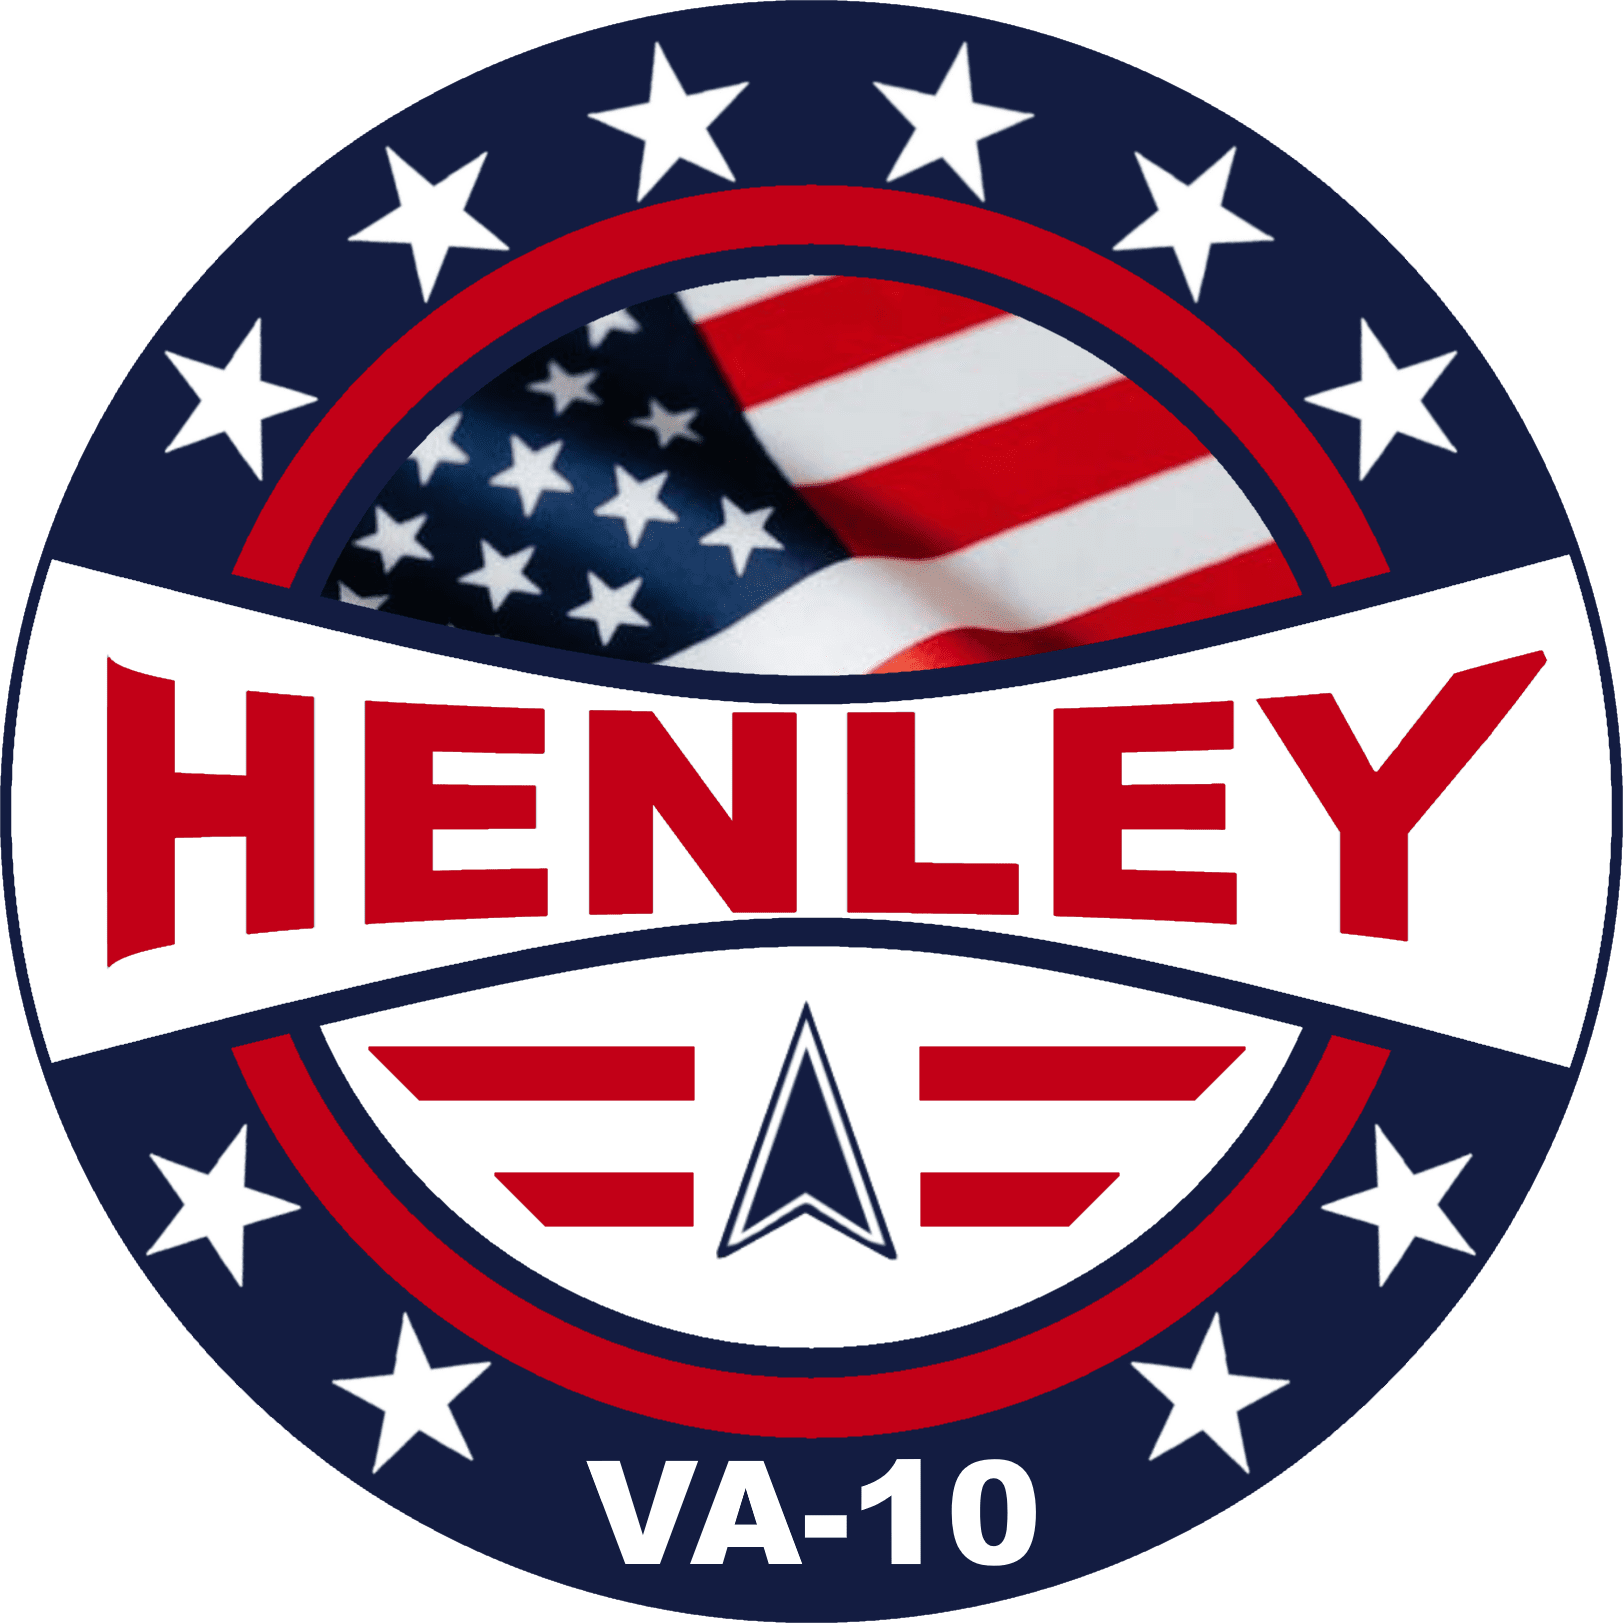 John Henley for Congress